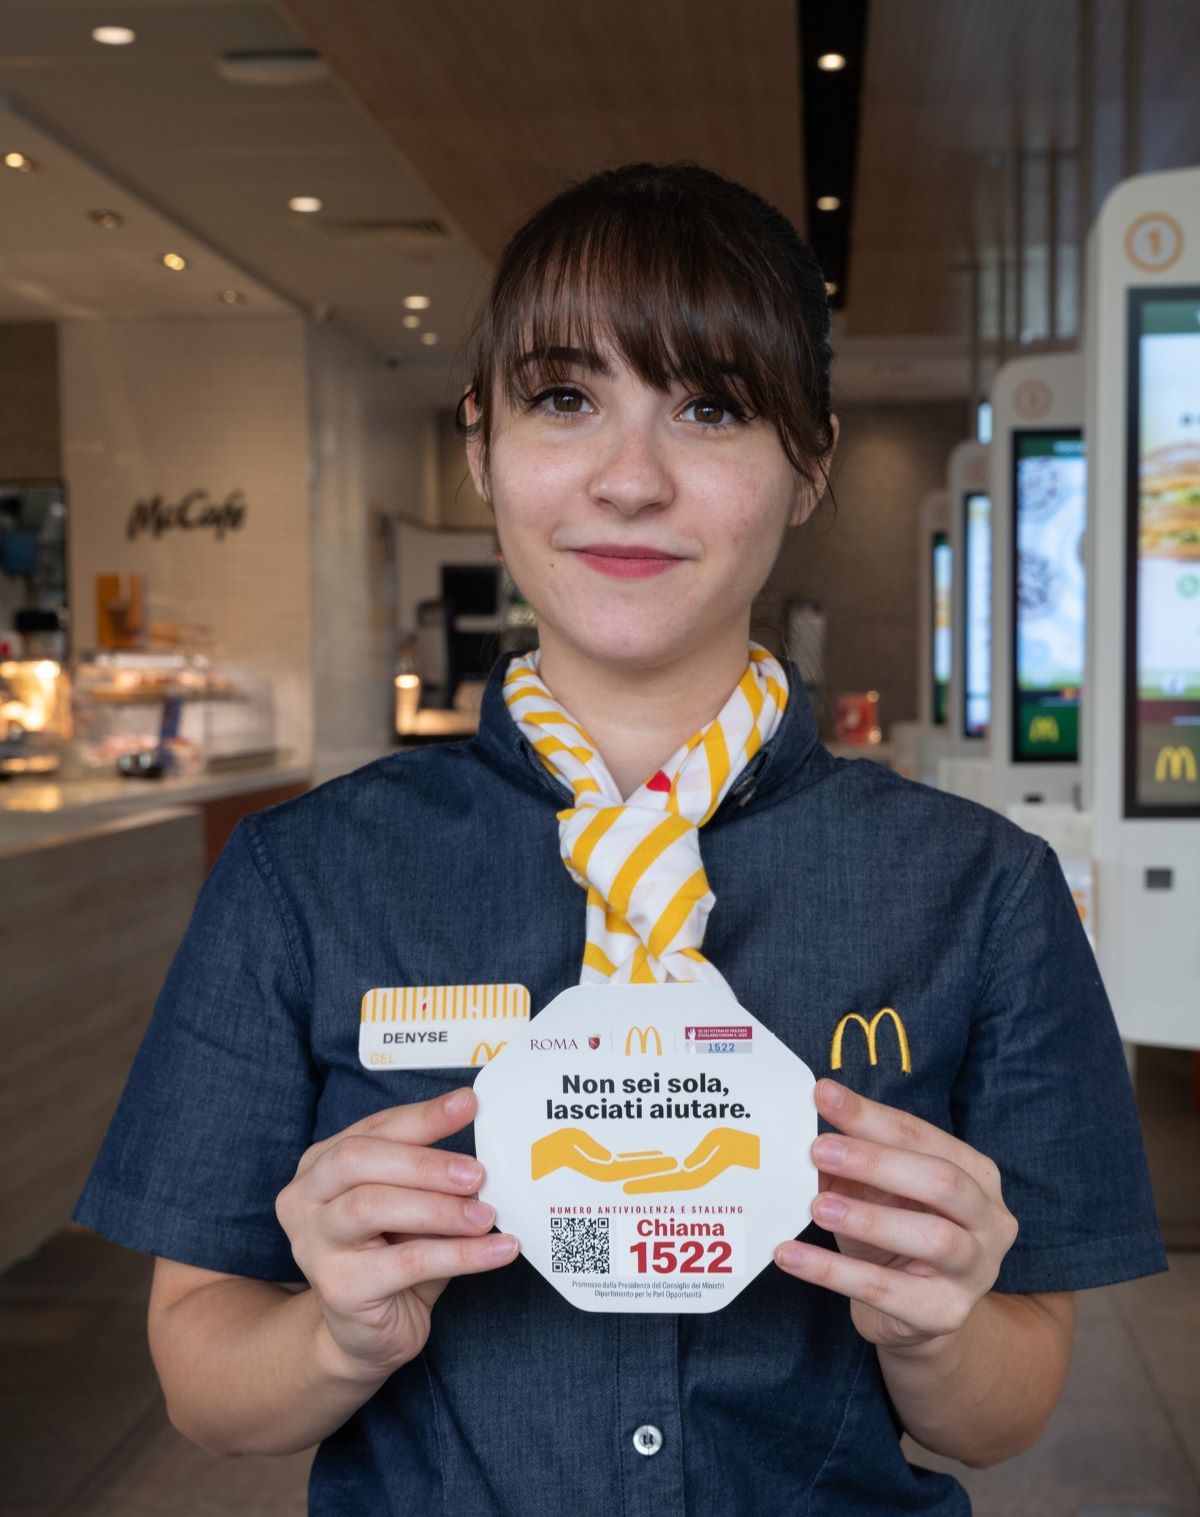 Green Retail  - McDonald’s annuncia l’adesione all’iniziativa contro la violenza sulle donne “Non sei sola, lasciati aiutare” 